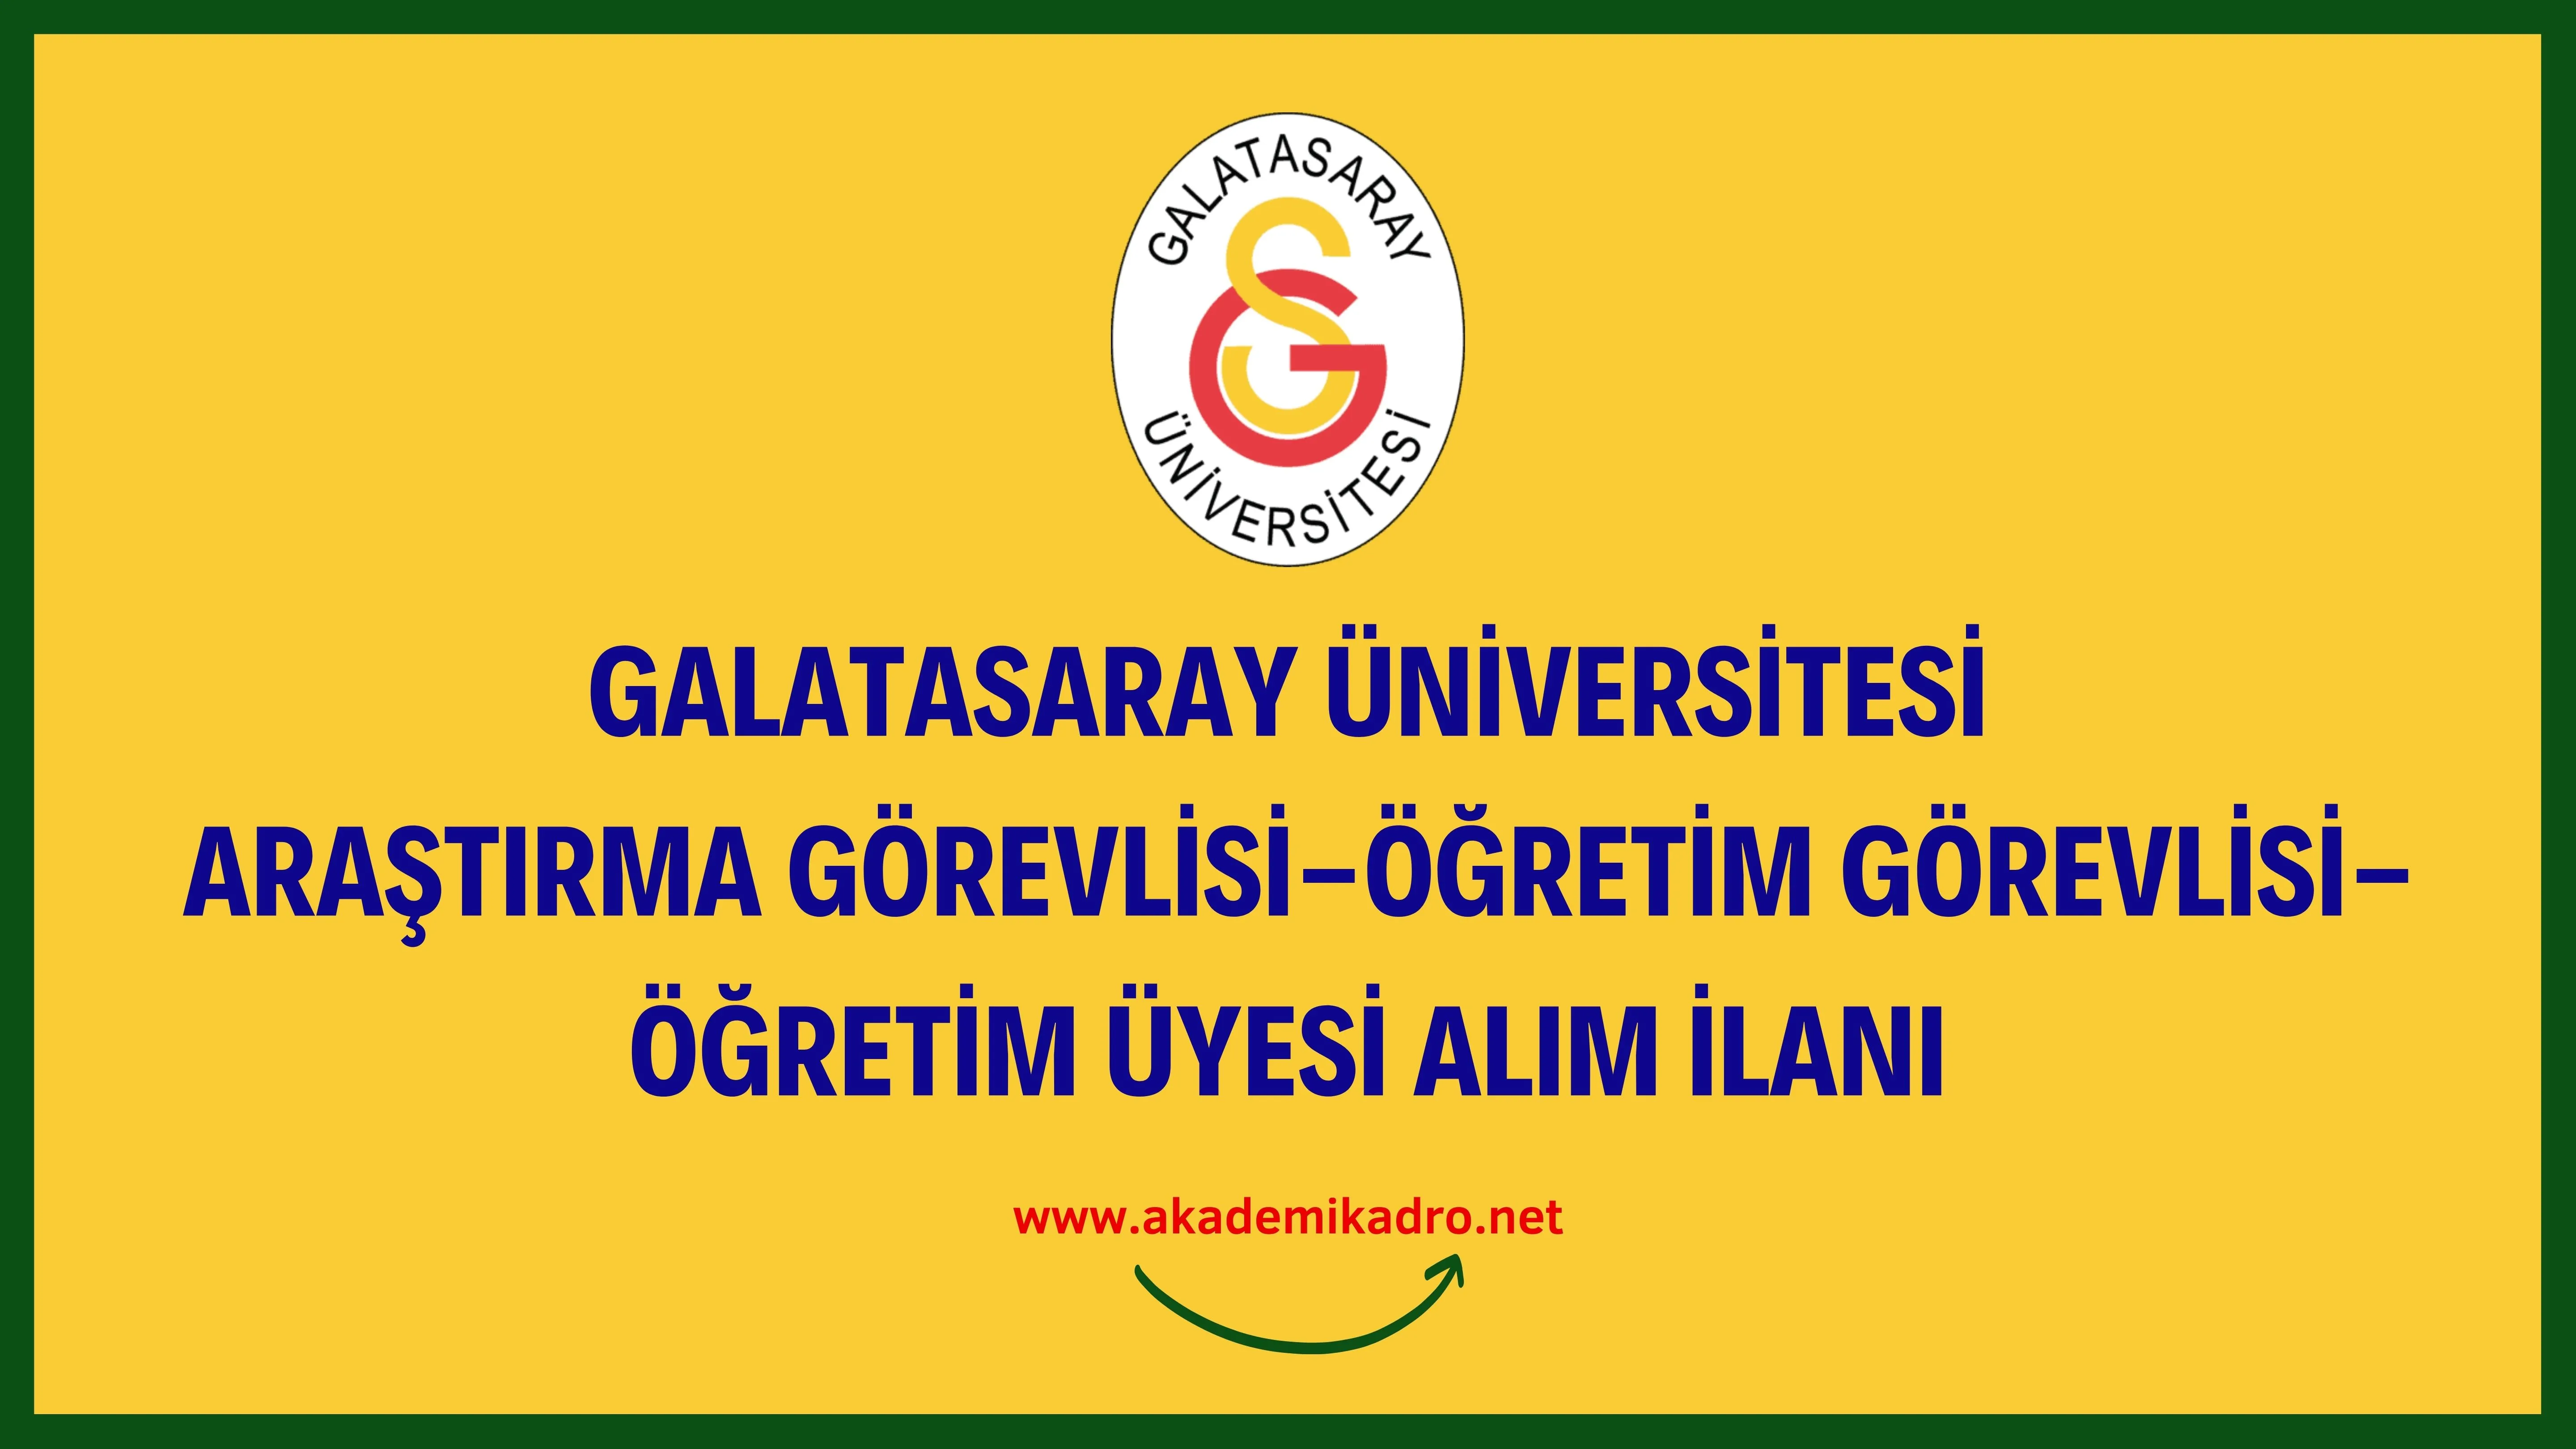 Galatasaray Üniversitesi Öğretim görevlisi, 7 Araştırma görevlisi ve çeşitli branşlarda 10 Öğretim üyesi alacak. Son başvuru tarihi 10 Ocak 2023.